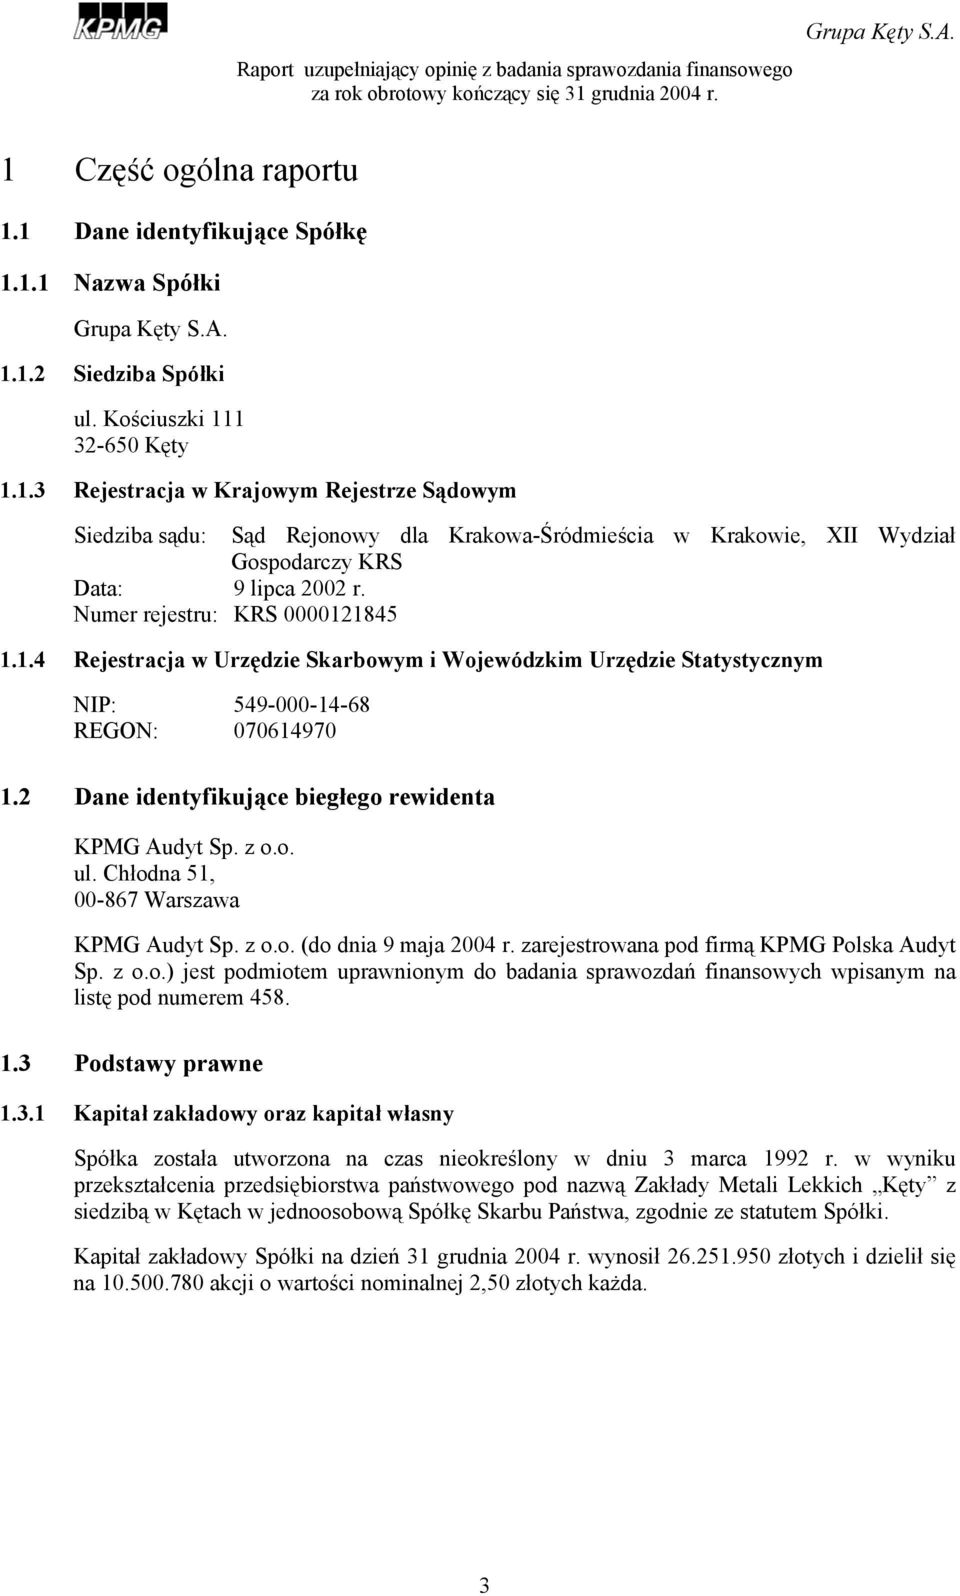 z o.o. ul. Chłodna 51, 00-867 Warszawa KPMG Audyt Sp. z o.o. (do dnia 9 maja 2004 r. zarejestrowana pod firmą KPMG Polska Audyt Sp. z o.o.) jest podmiotem uprawnionym do badania sprawozdań finansowych wpisanym na listę pod numerem 458.